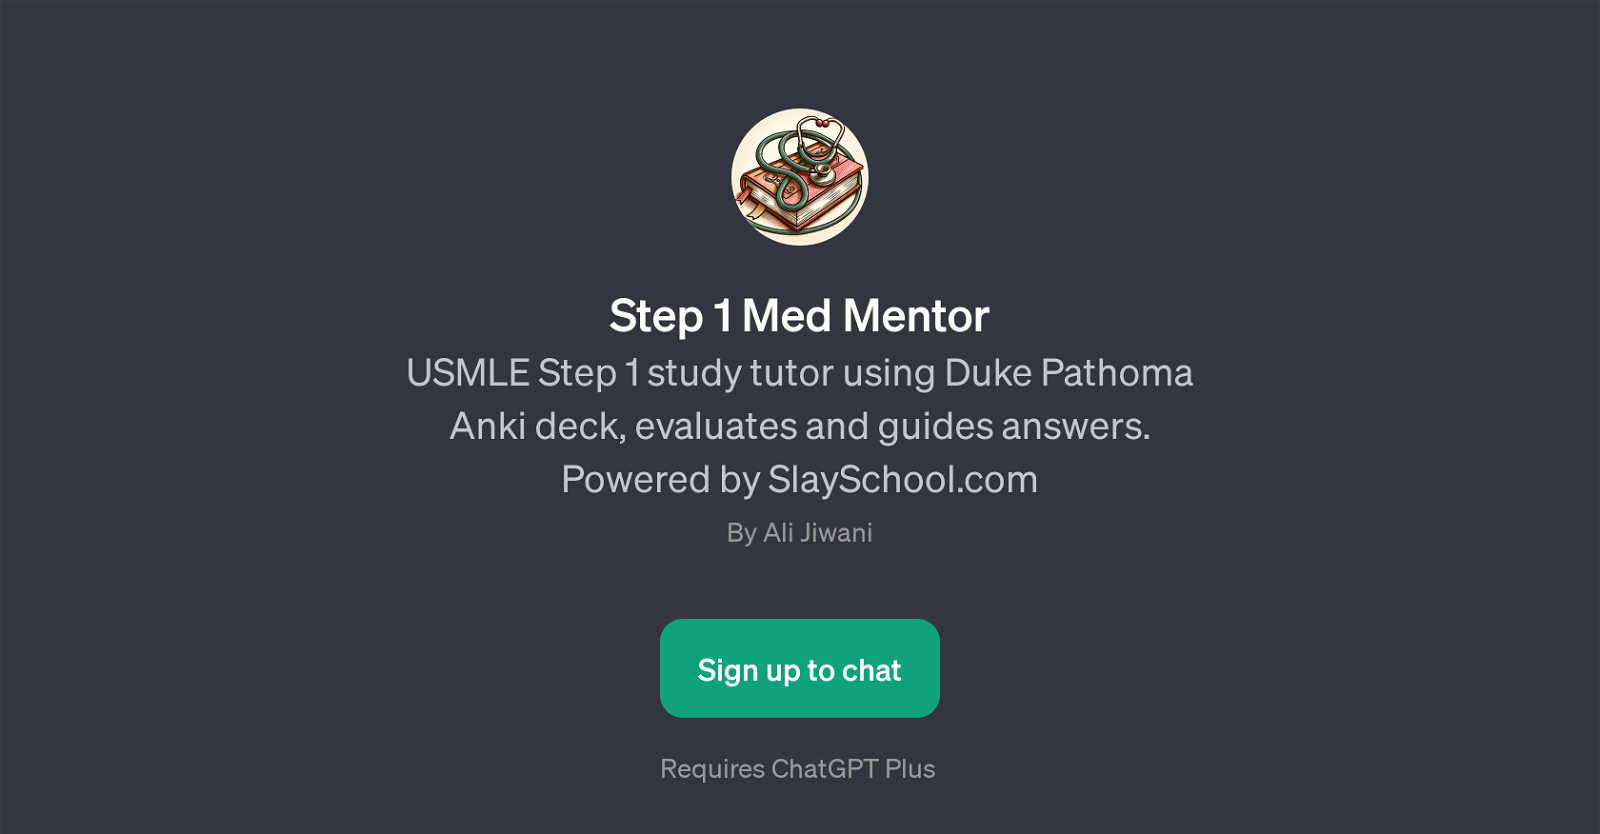 Step 1 Med Mentor website